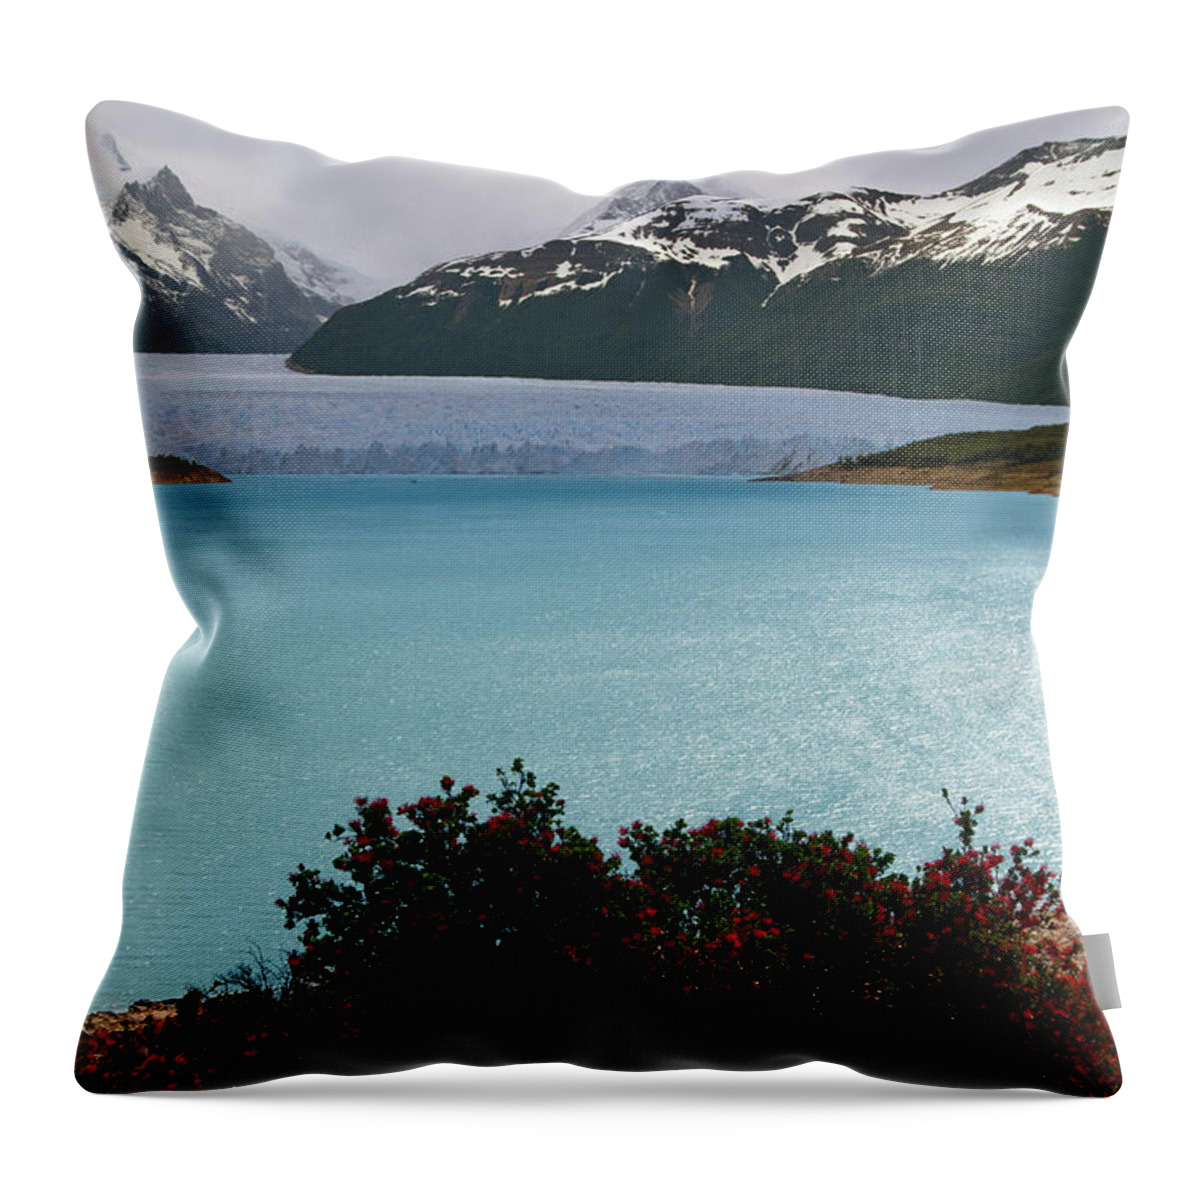 Scenics Throw Pillow featuring the photograph Perito Moreno by Antonio Vaccarini